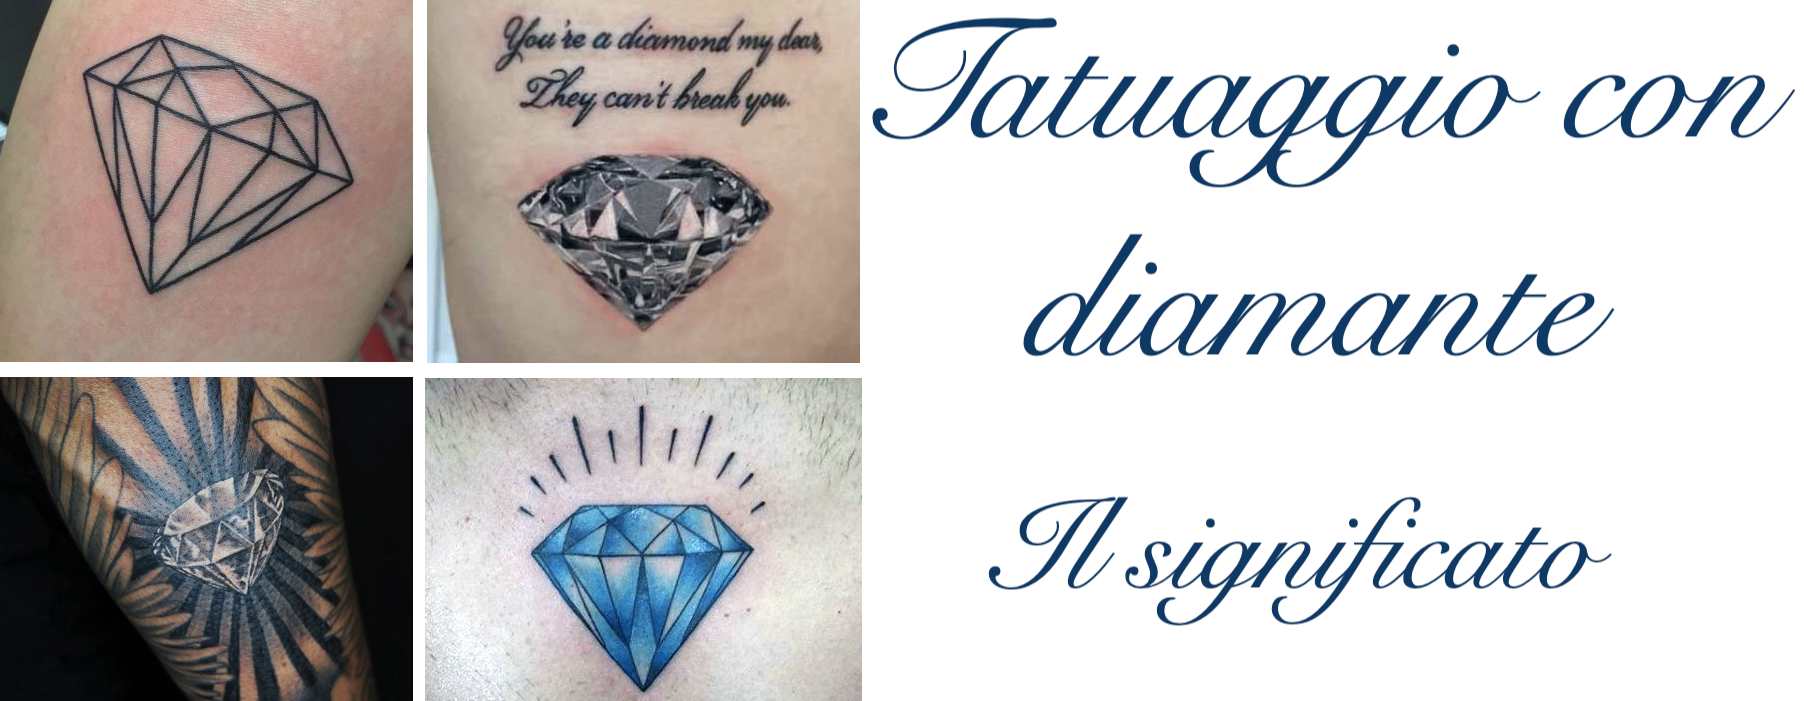 Tatuaggio Tattoo Diamante Significato